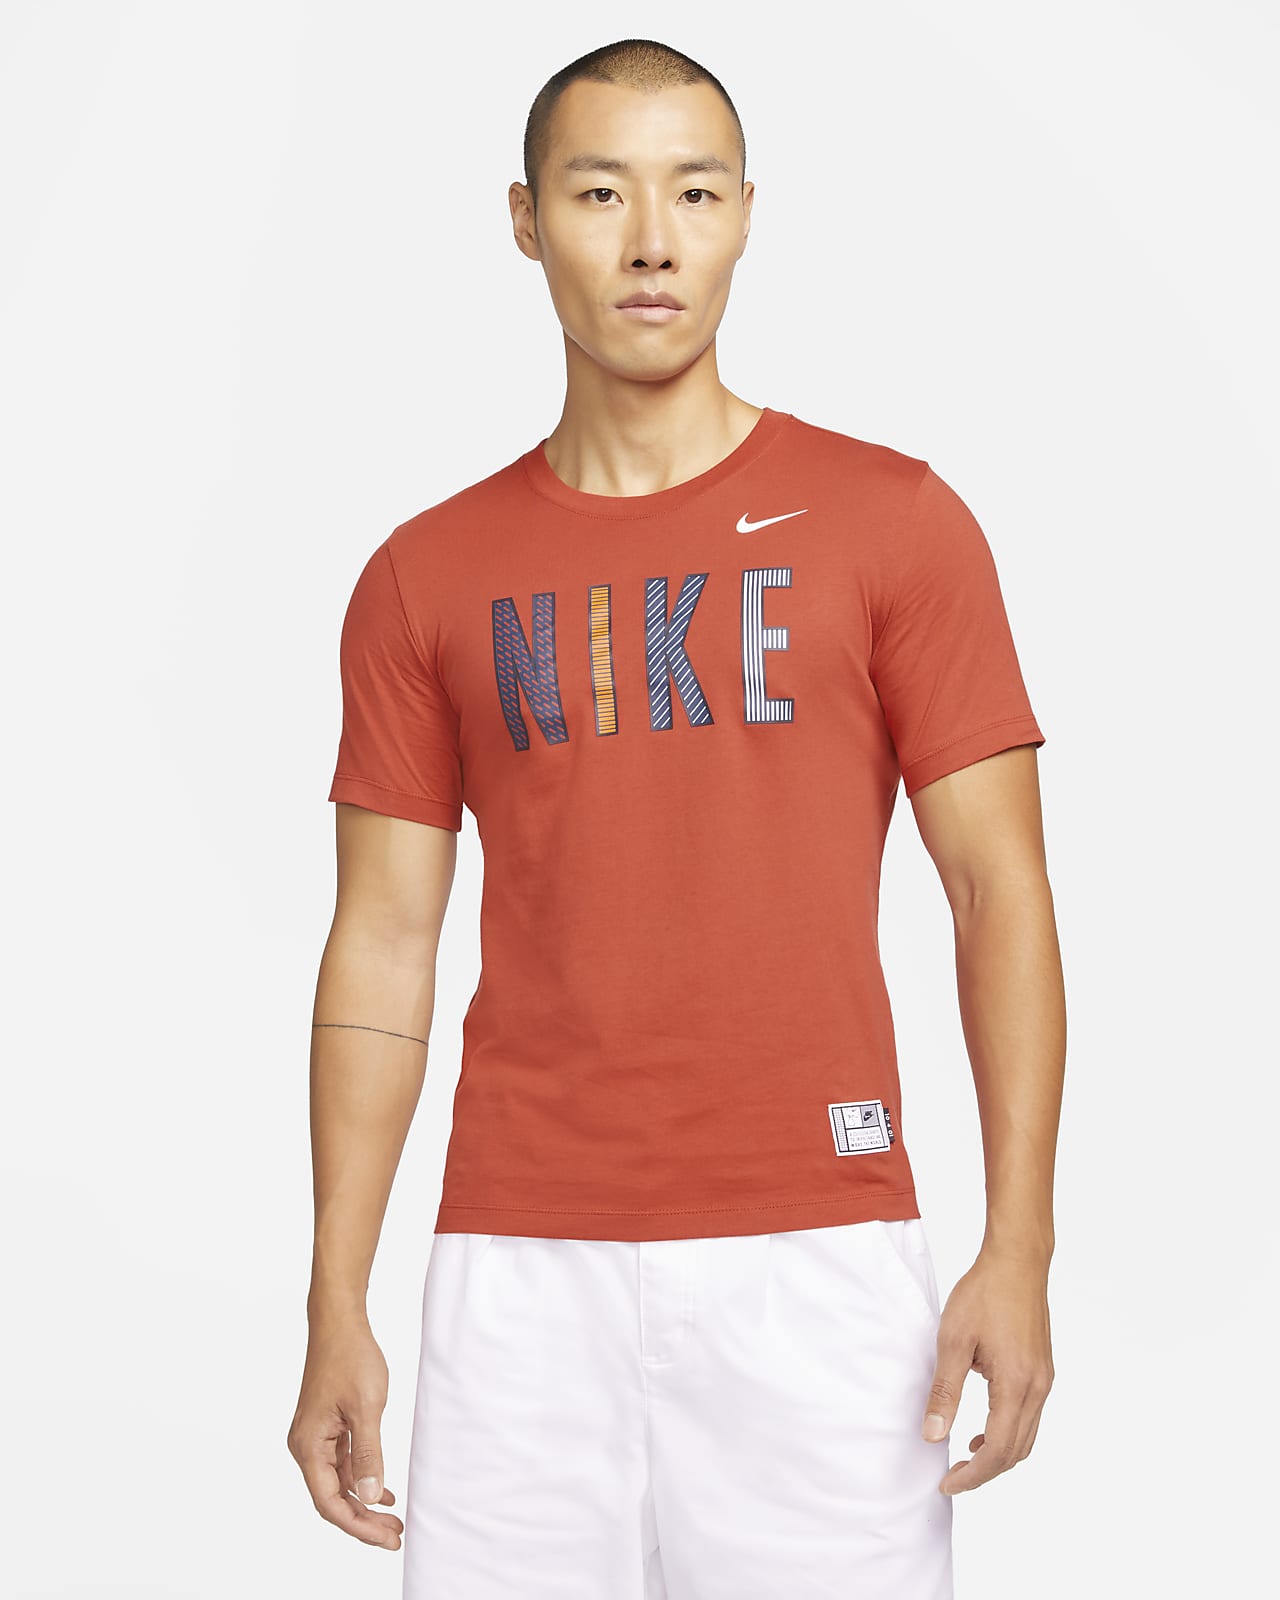 Serena Williams Design Crew Graphic Tennis T-Shirt